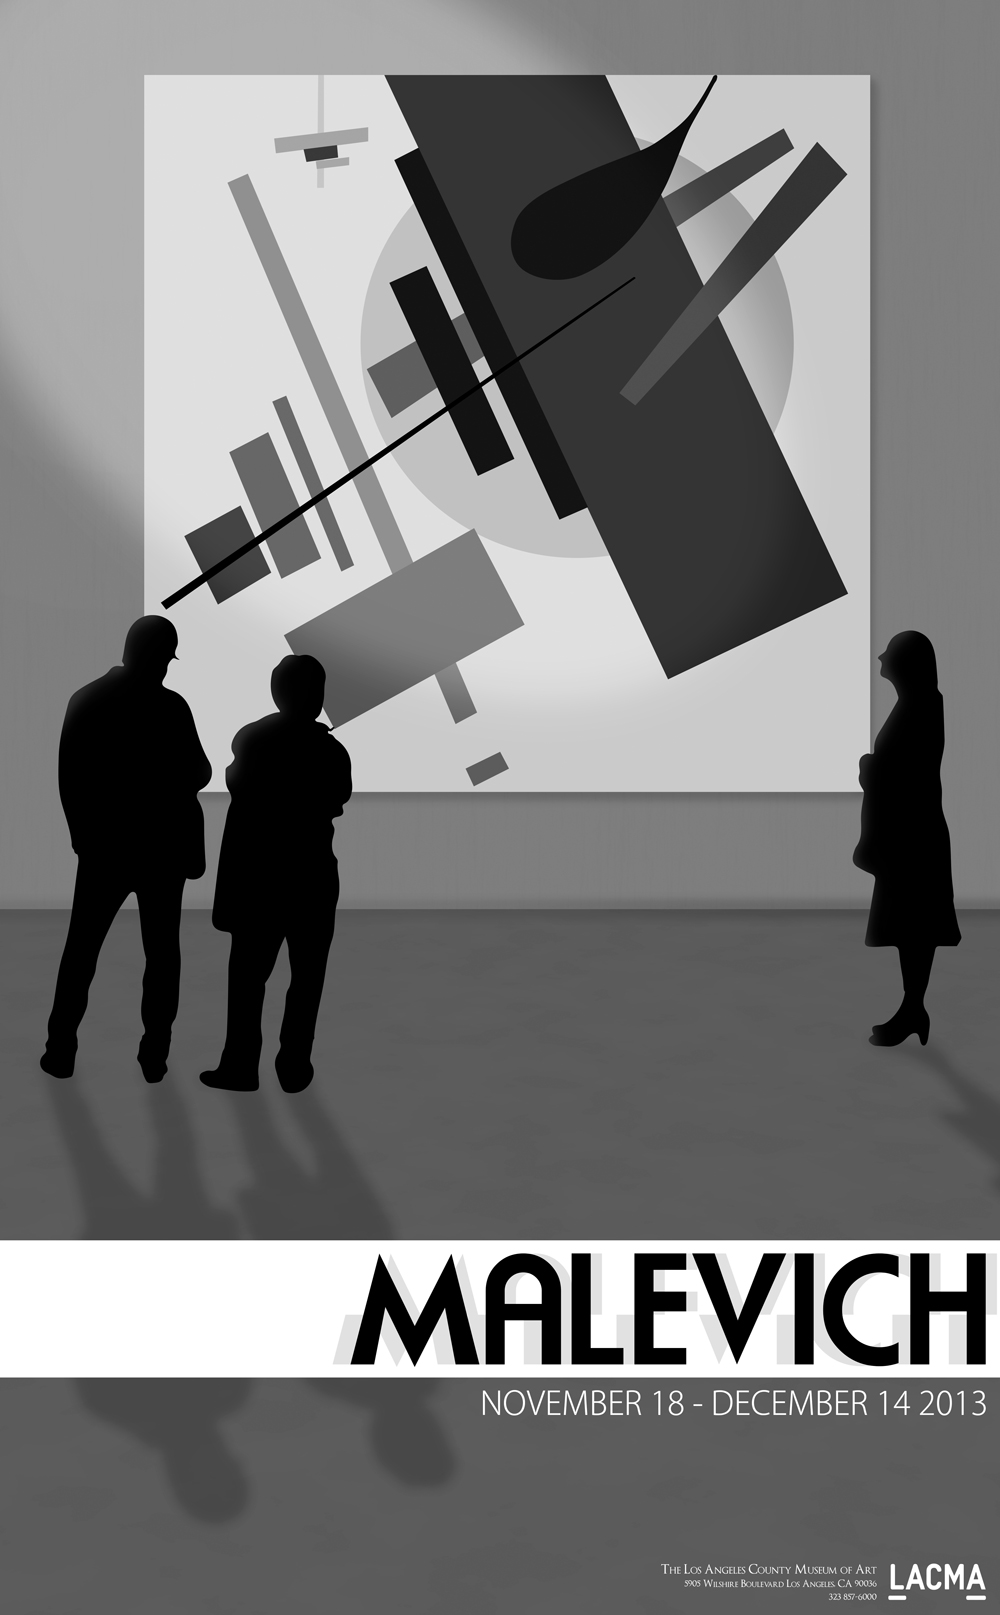 LACMA Malevich Exhibit Poster Design